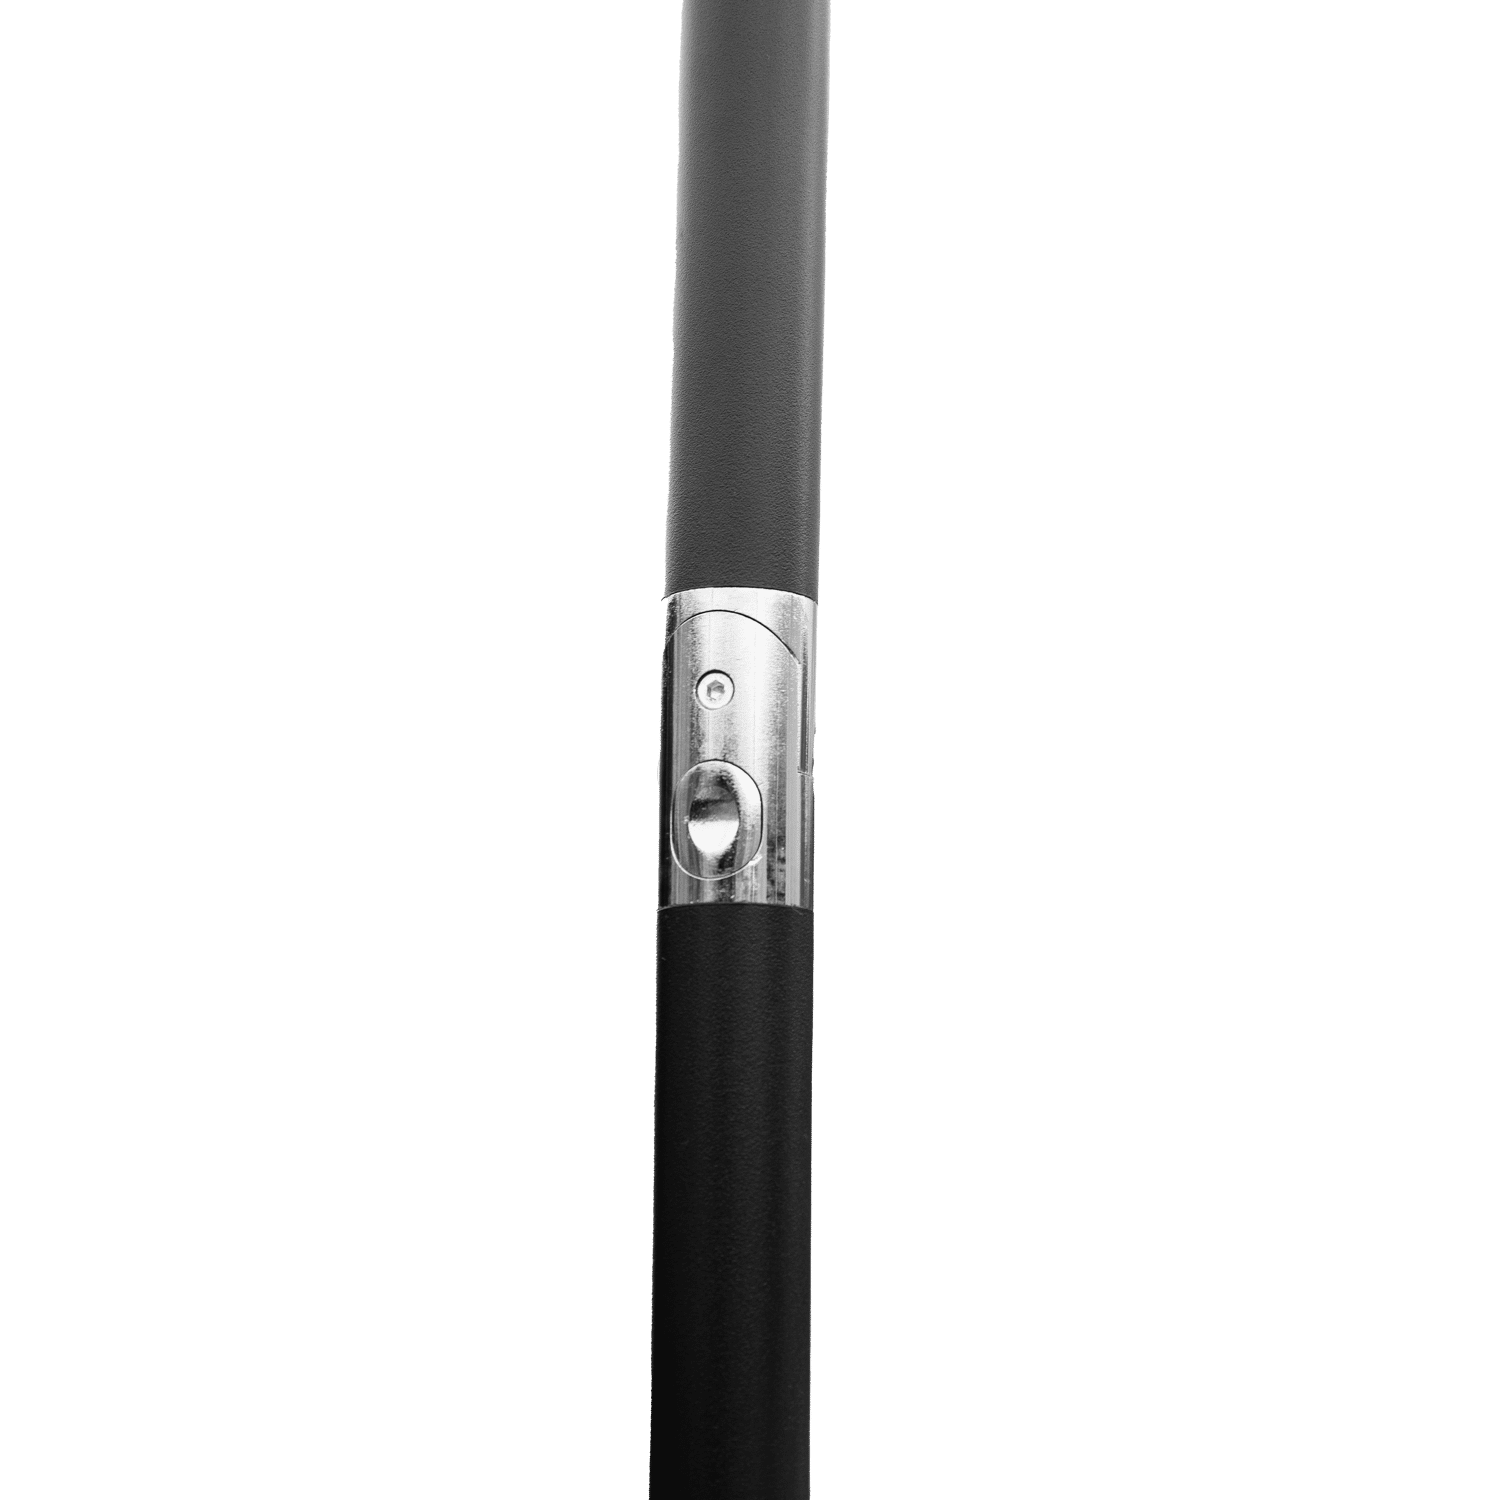  HAPUNA guarda-chuva redondo recto de 2,70m de diâmetro fúcsia